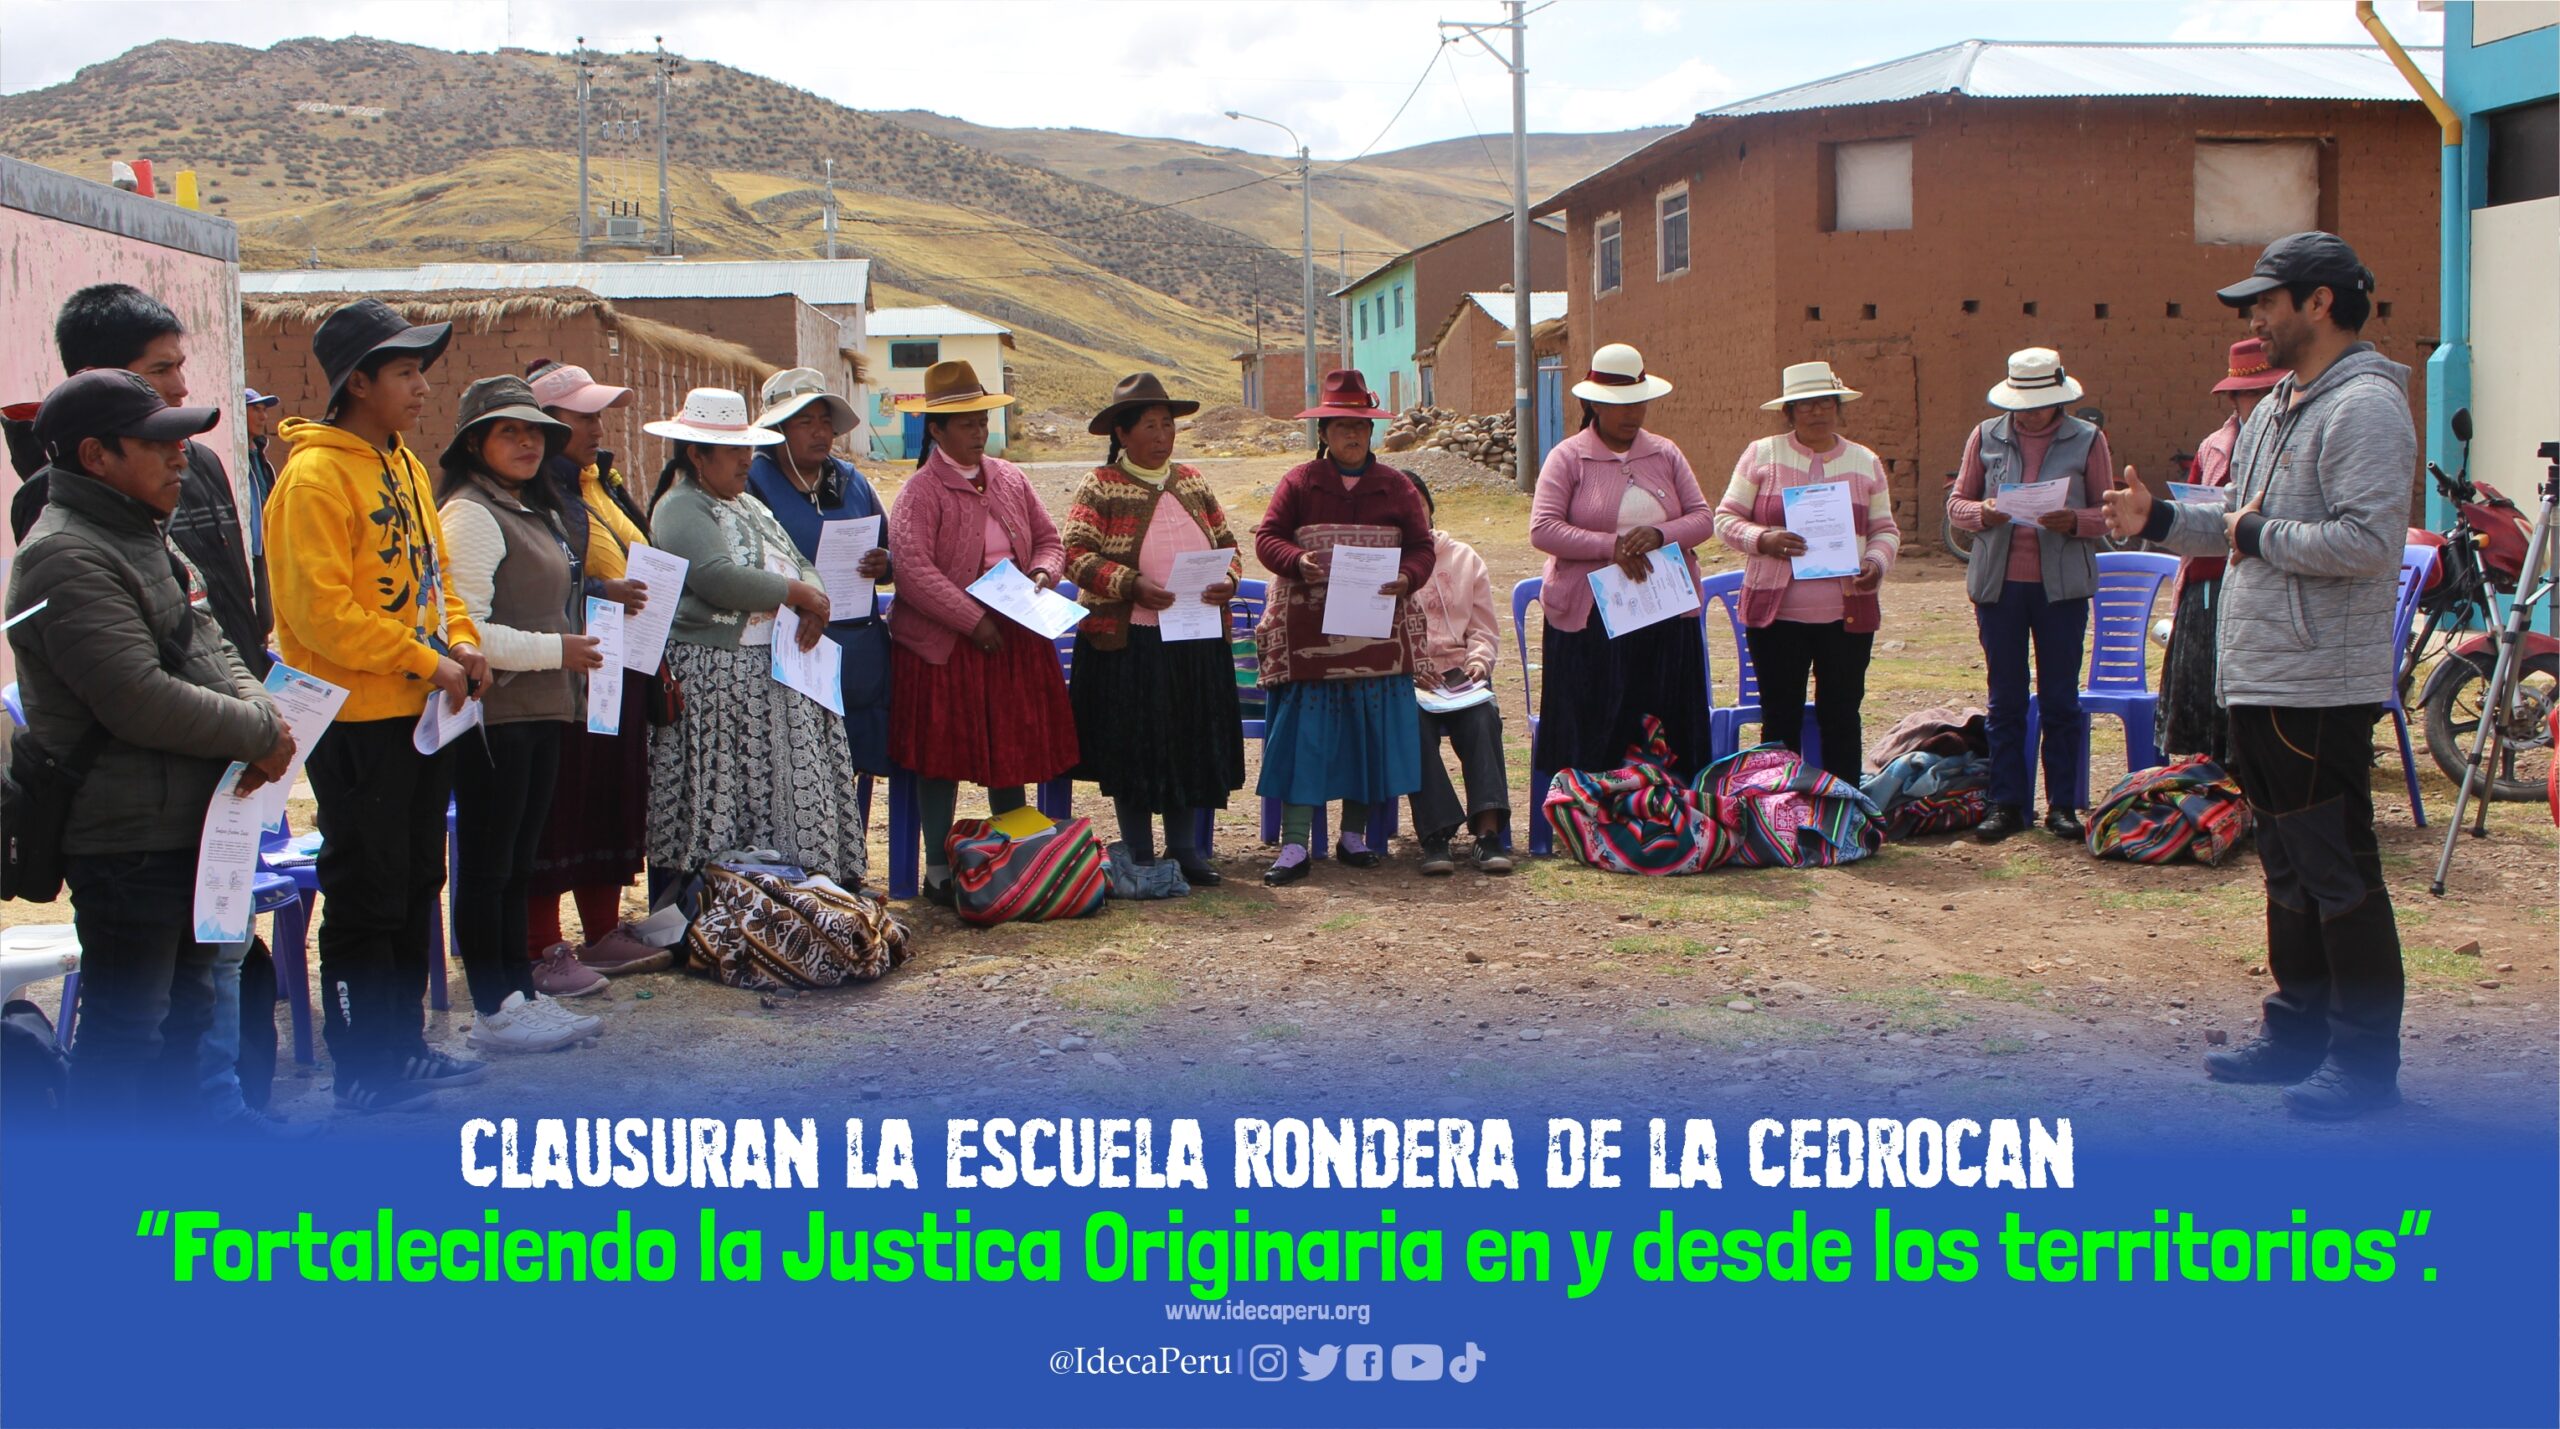 Clausuran la Escuela Rondera de la CEDROCAN “Fortaleciendo la Justica Originaria en y desde los territorios”.